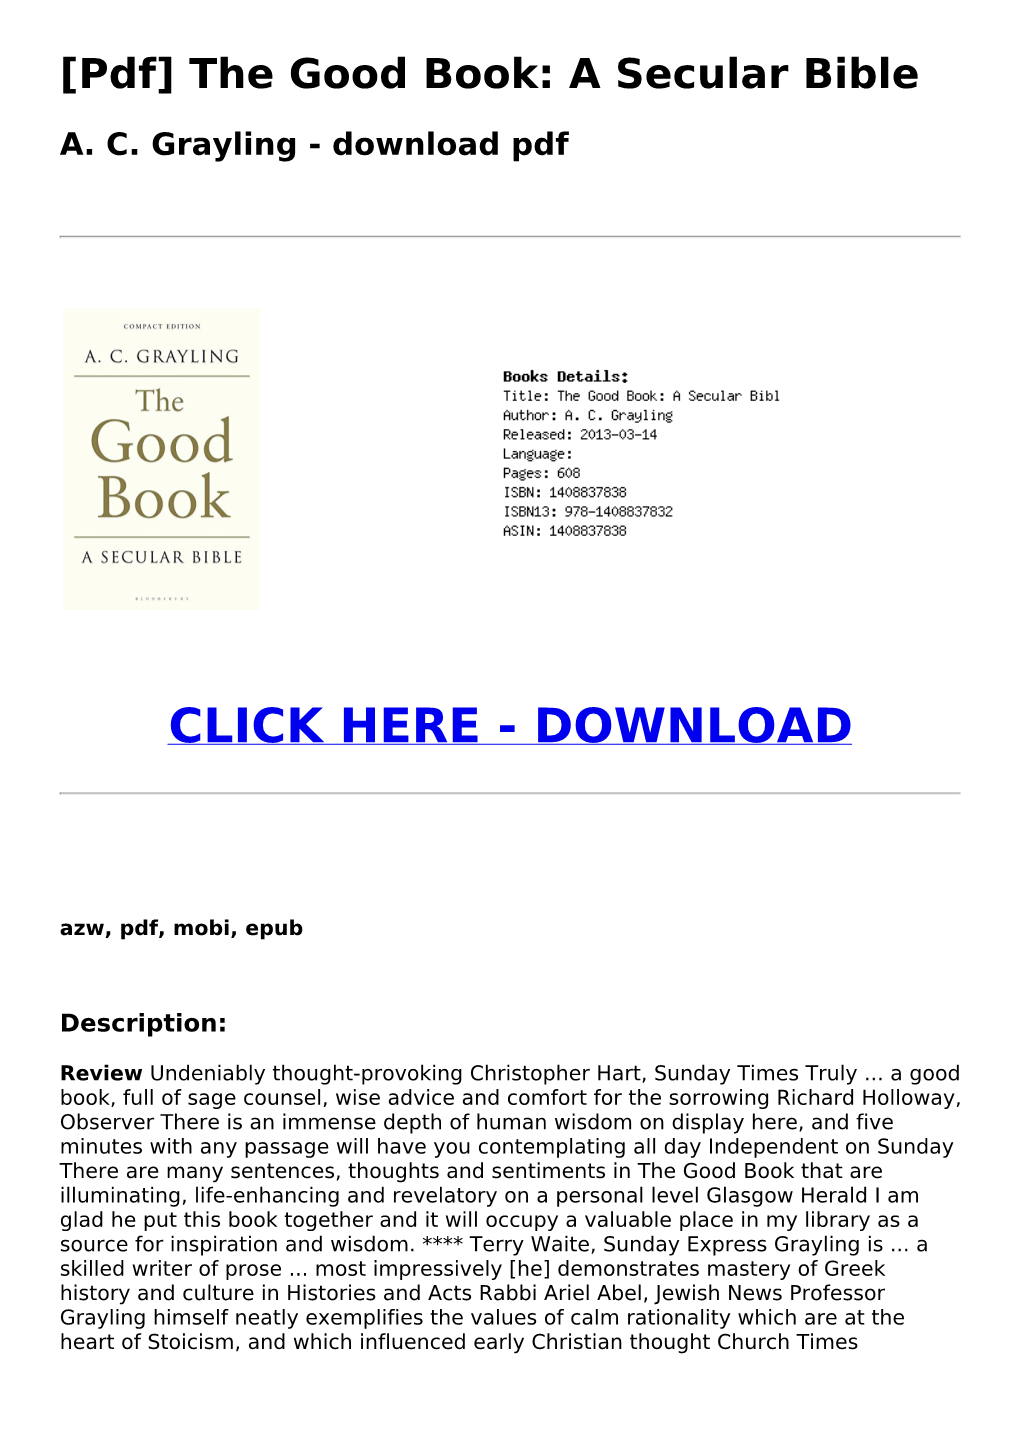 The Good Book: a Secular Bible AC Grayling